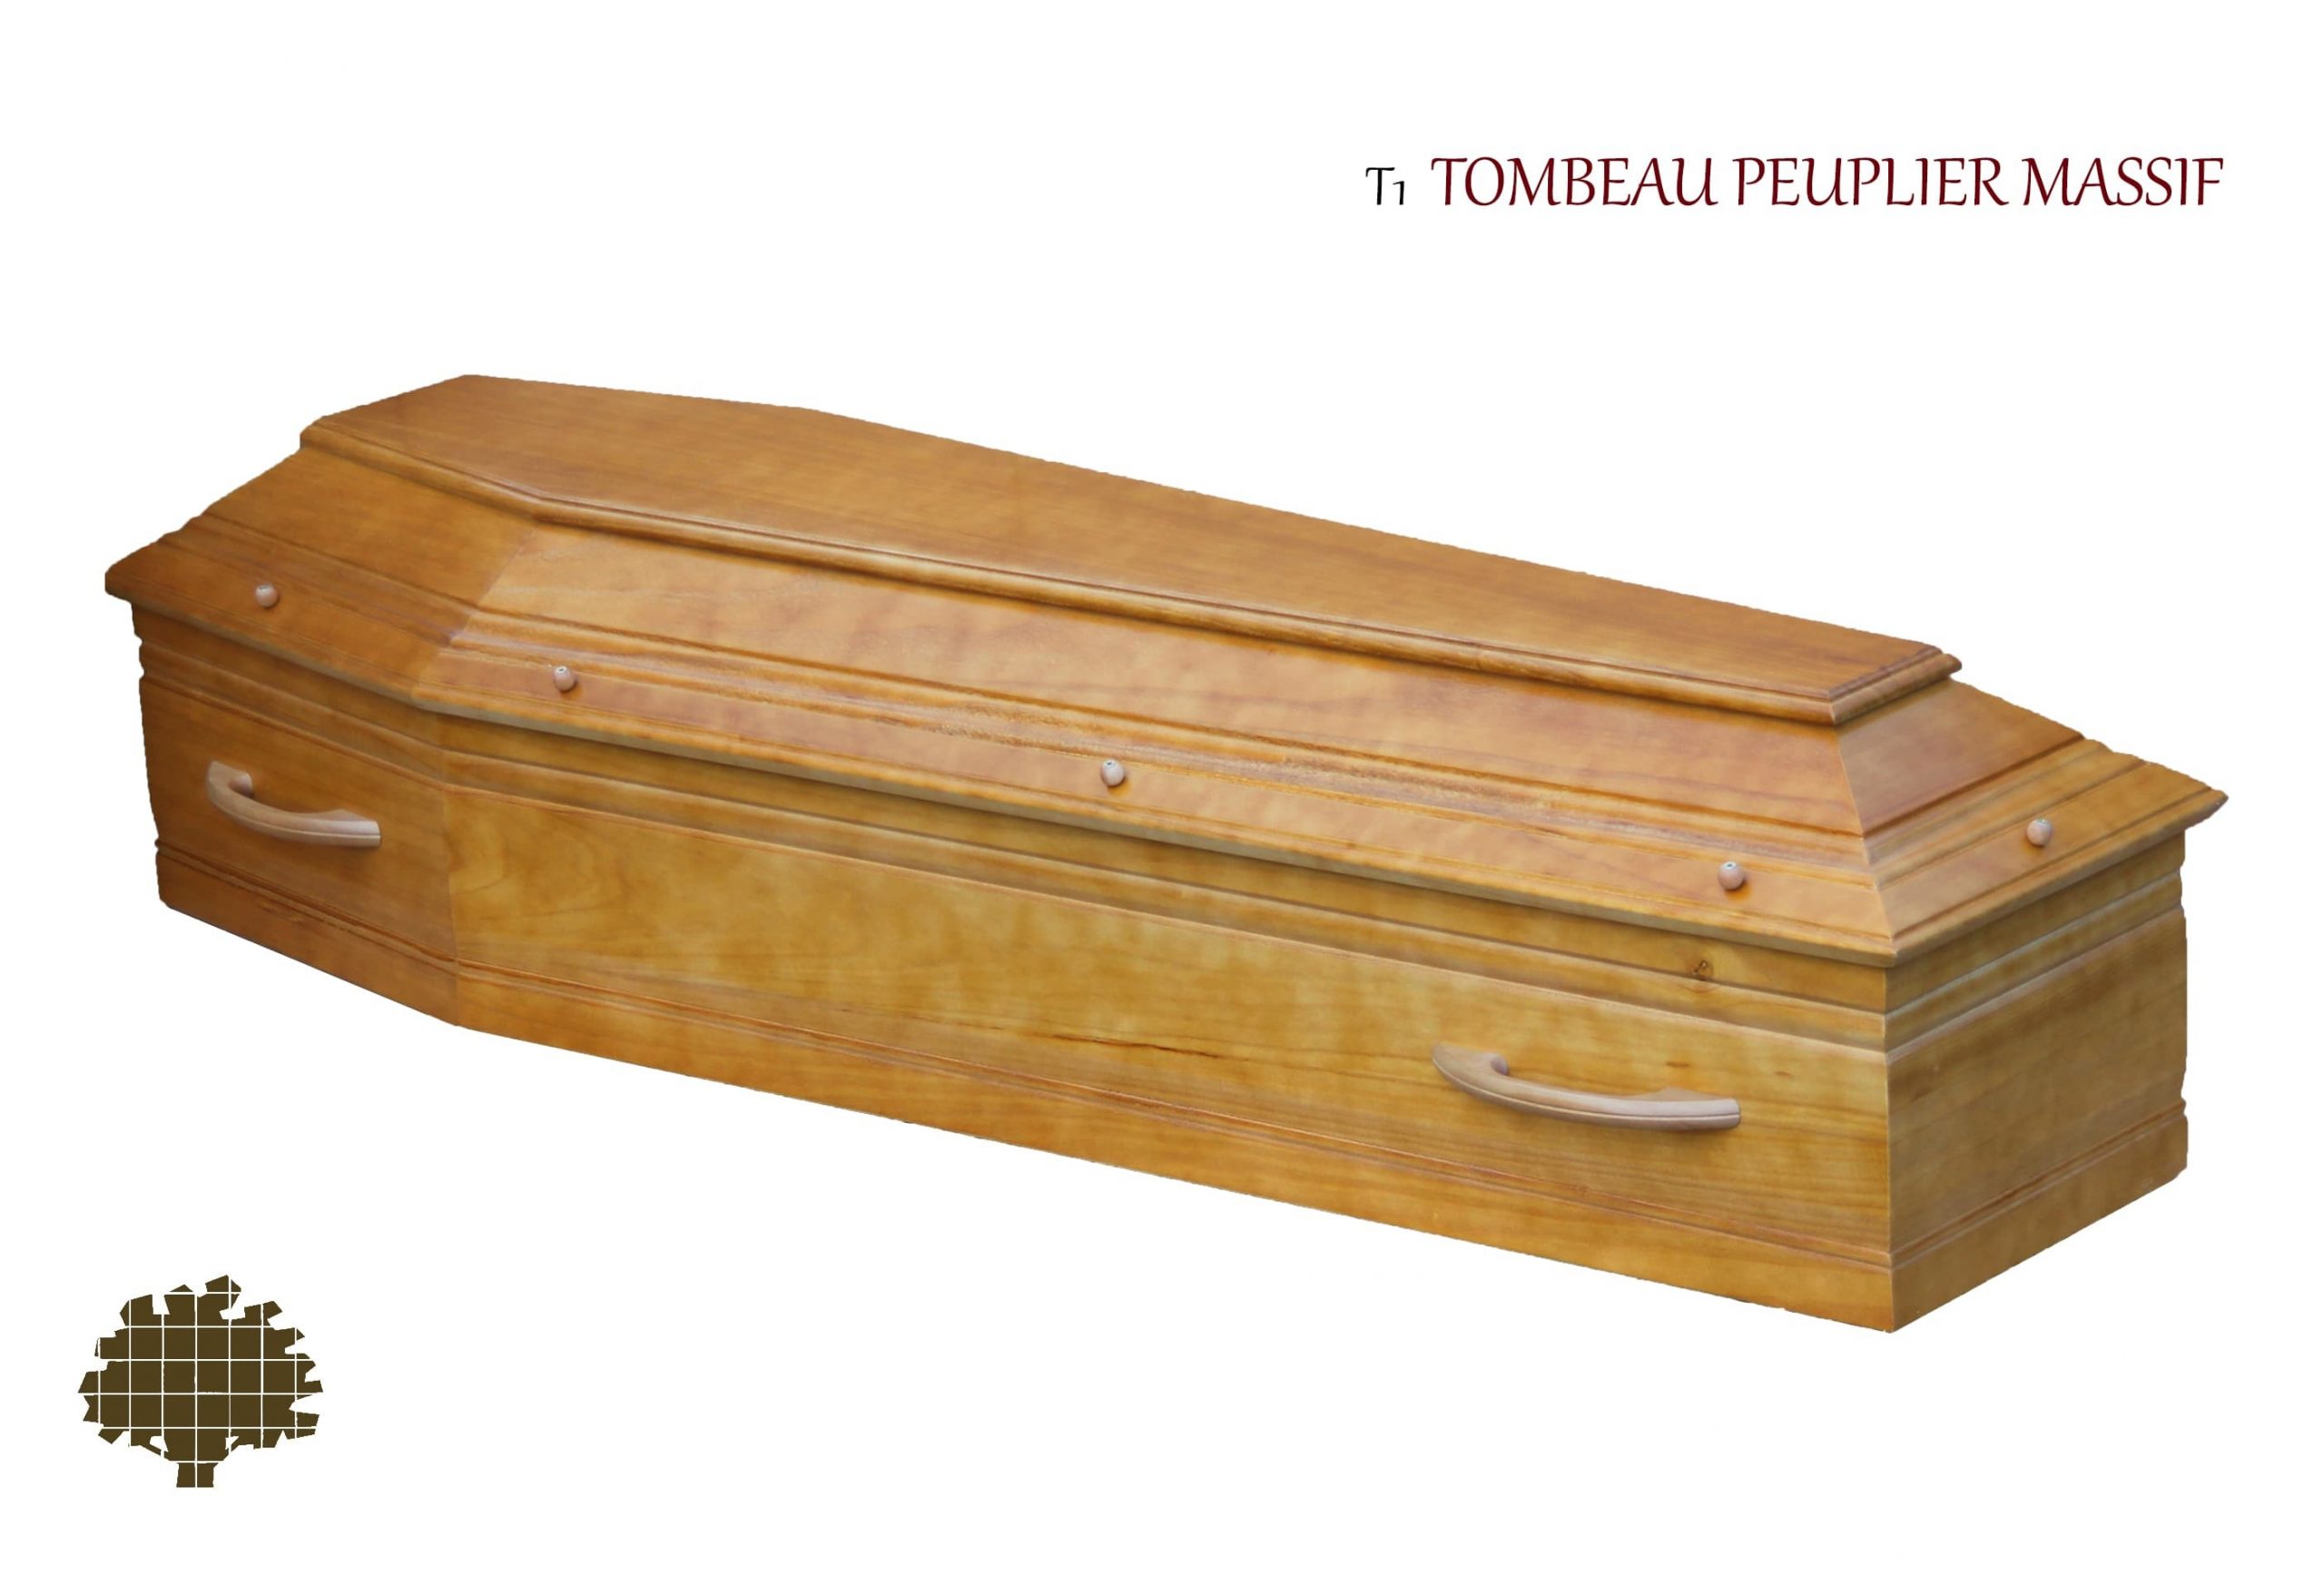 Cercueil Tombeau peuplier